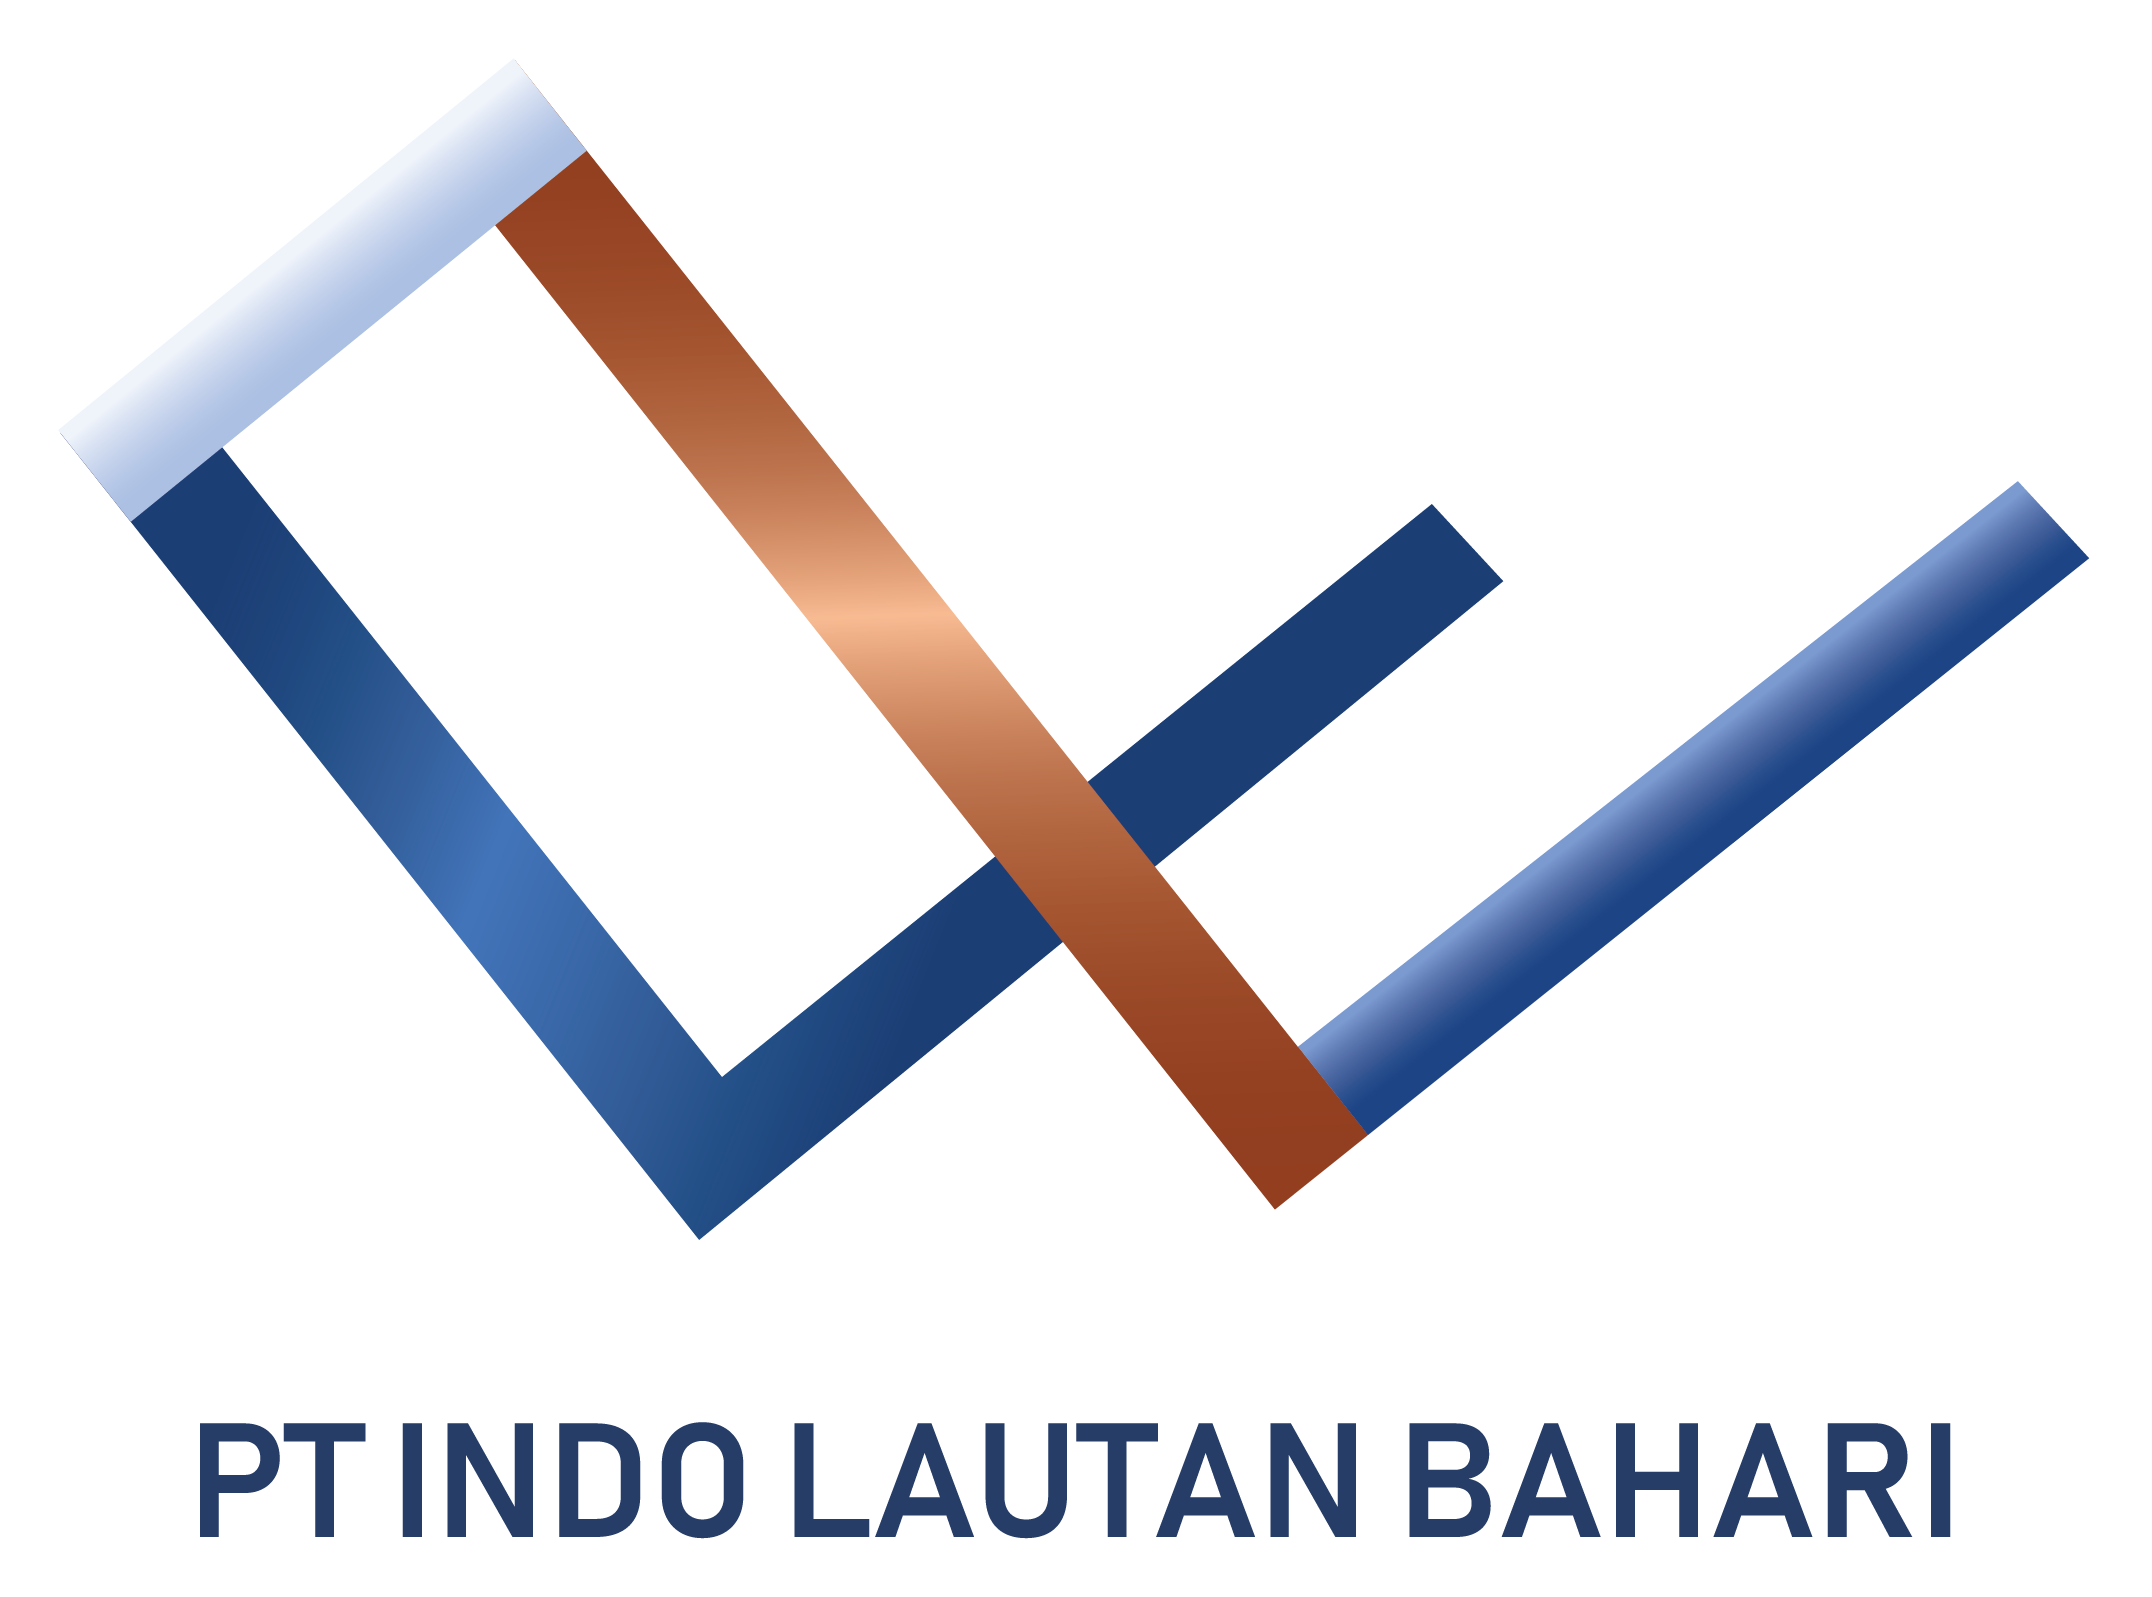 PT Indo Lautan Bahari